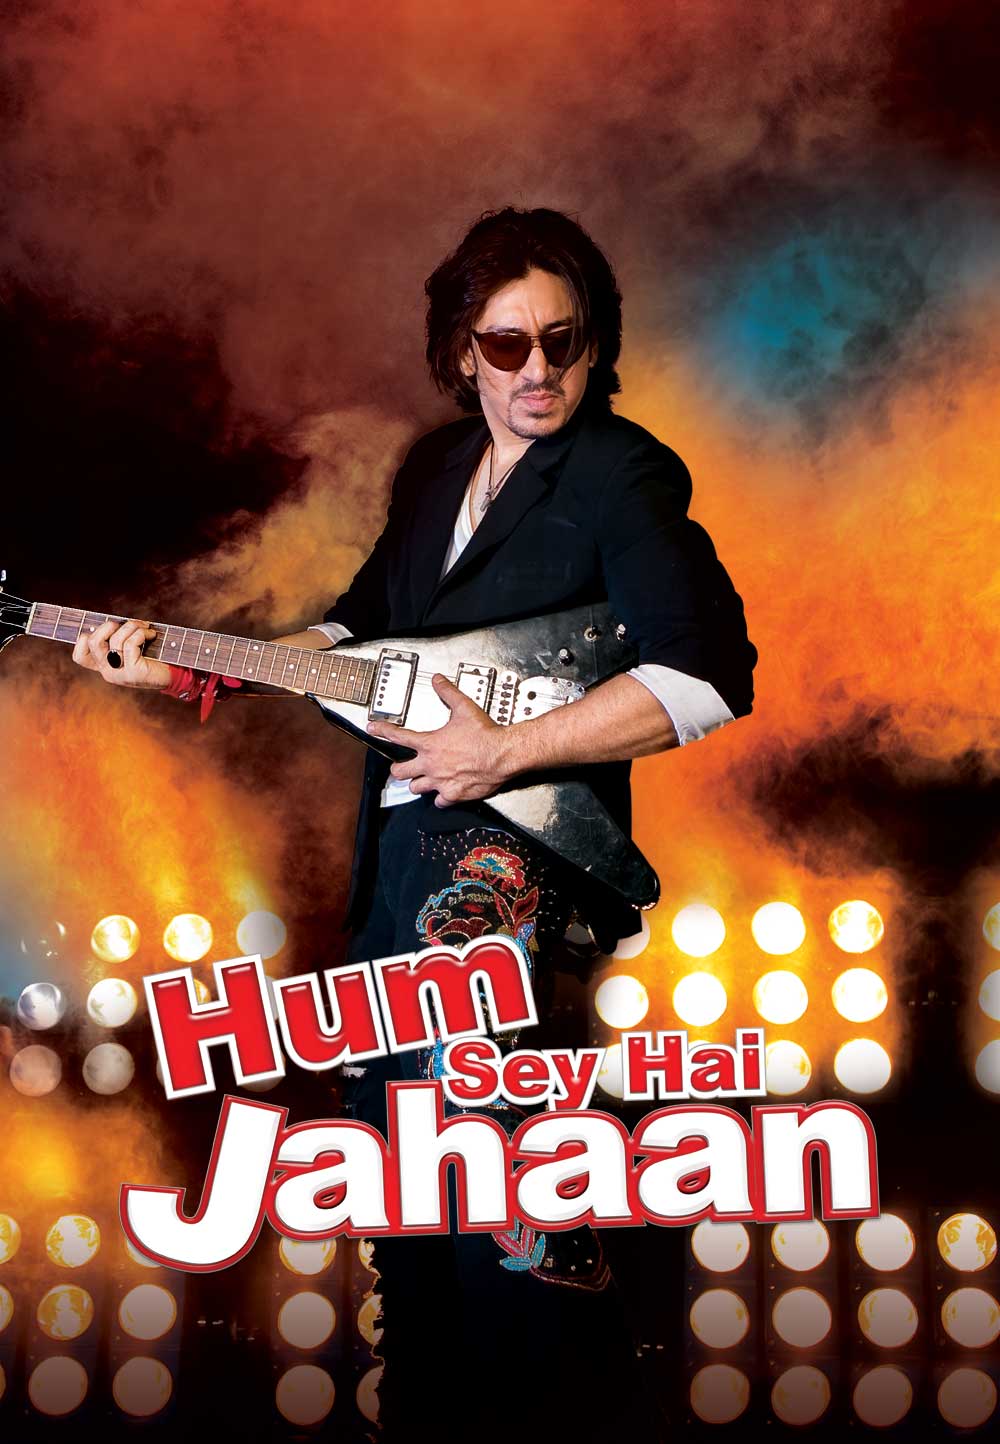 Hum Sey Hai Jahaan Poster 